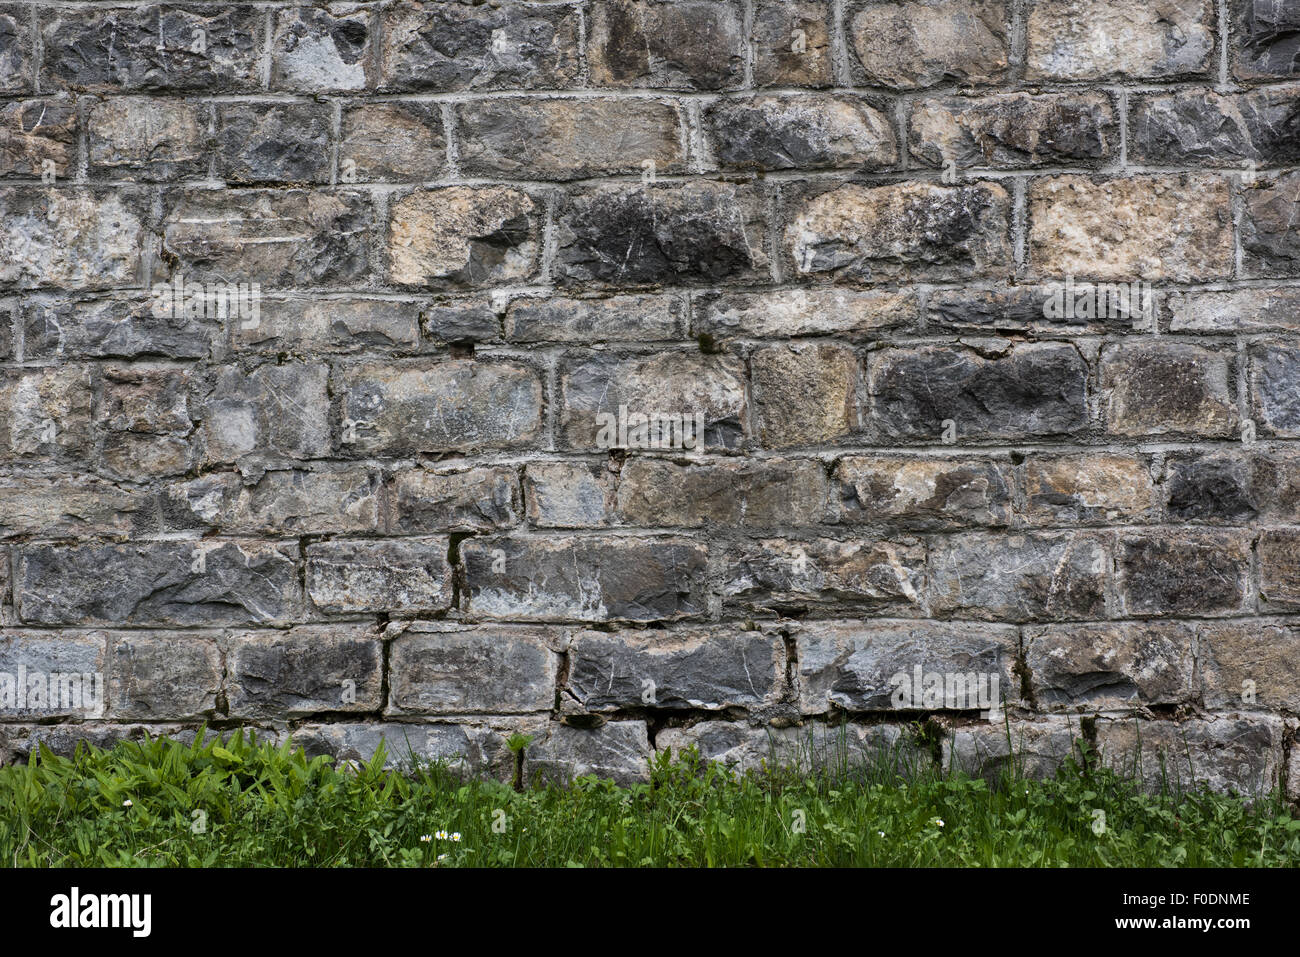 La texture du mur de pierre brute et de l'herbe bien verte, personnalisable, adapté à l'utilisation d'arrière-plan. Banque D'Images